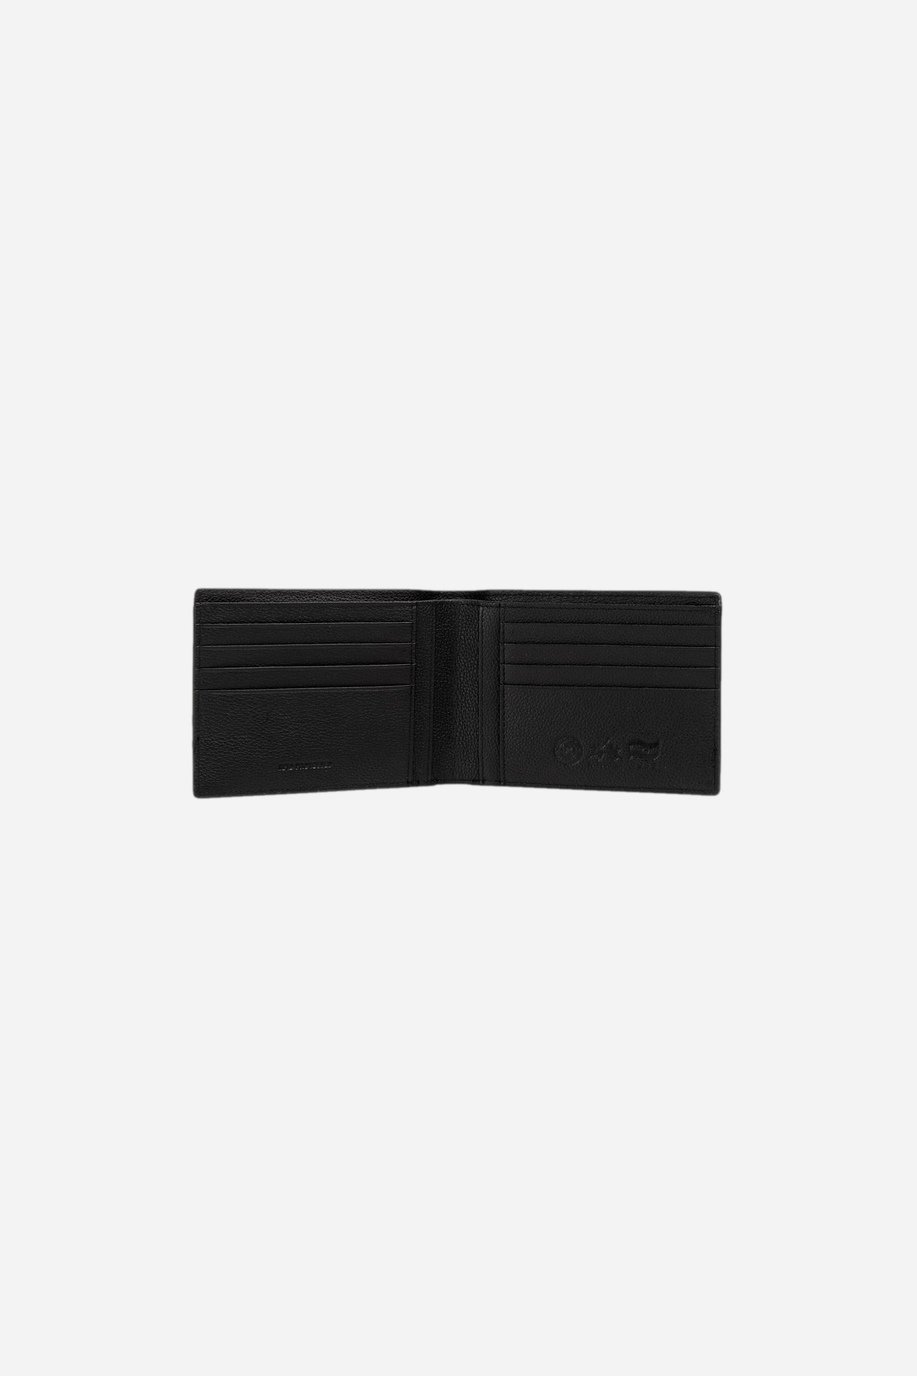 Men's leather wallet - Accessories Man | La Martina - Official Online Shop